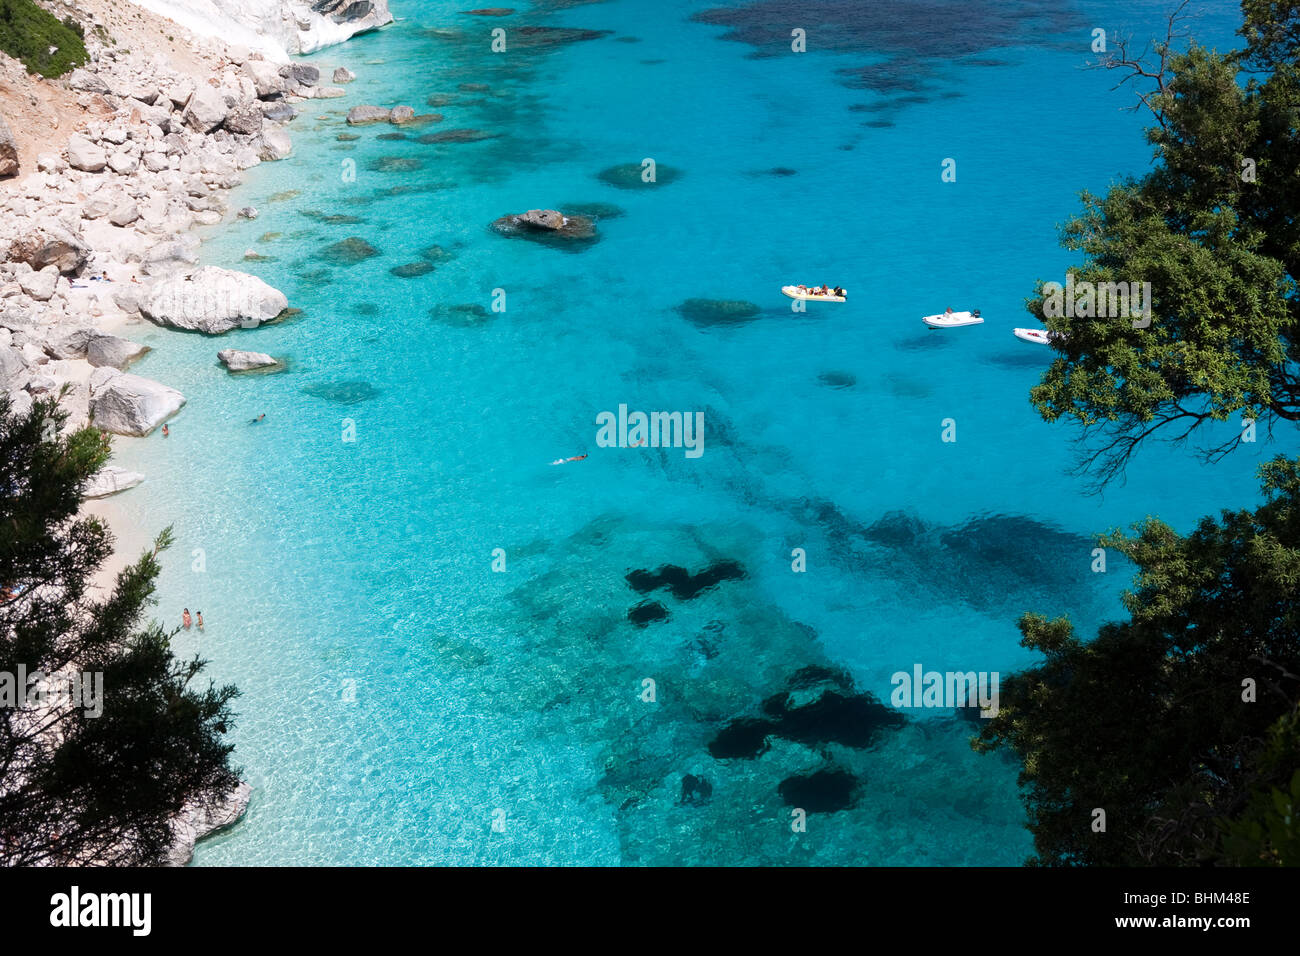 La baie de Cala Goloritze Vide Plage, Sardaigne, île de l'Italie. Eau bleu clair dans la baie de Cala Goloritzè, Mer Méditerranée Banque D'Images